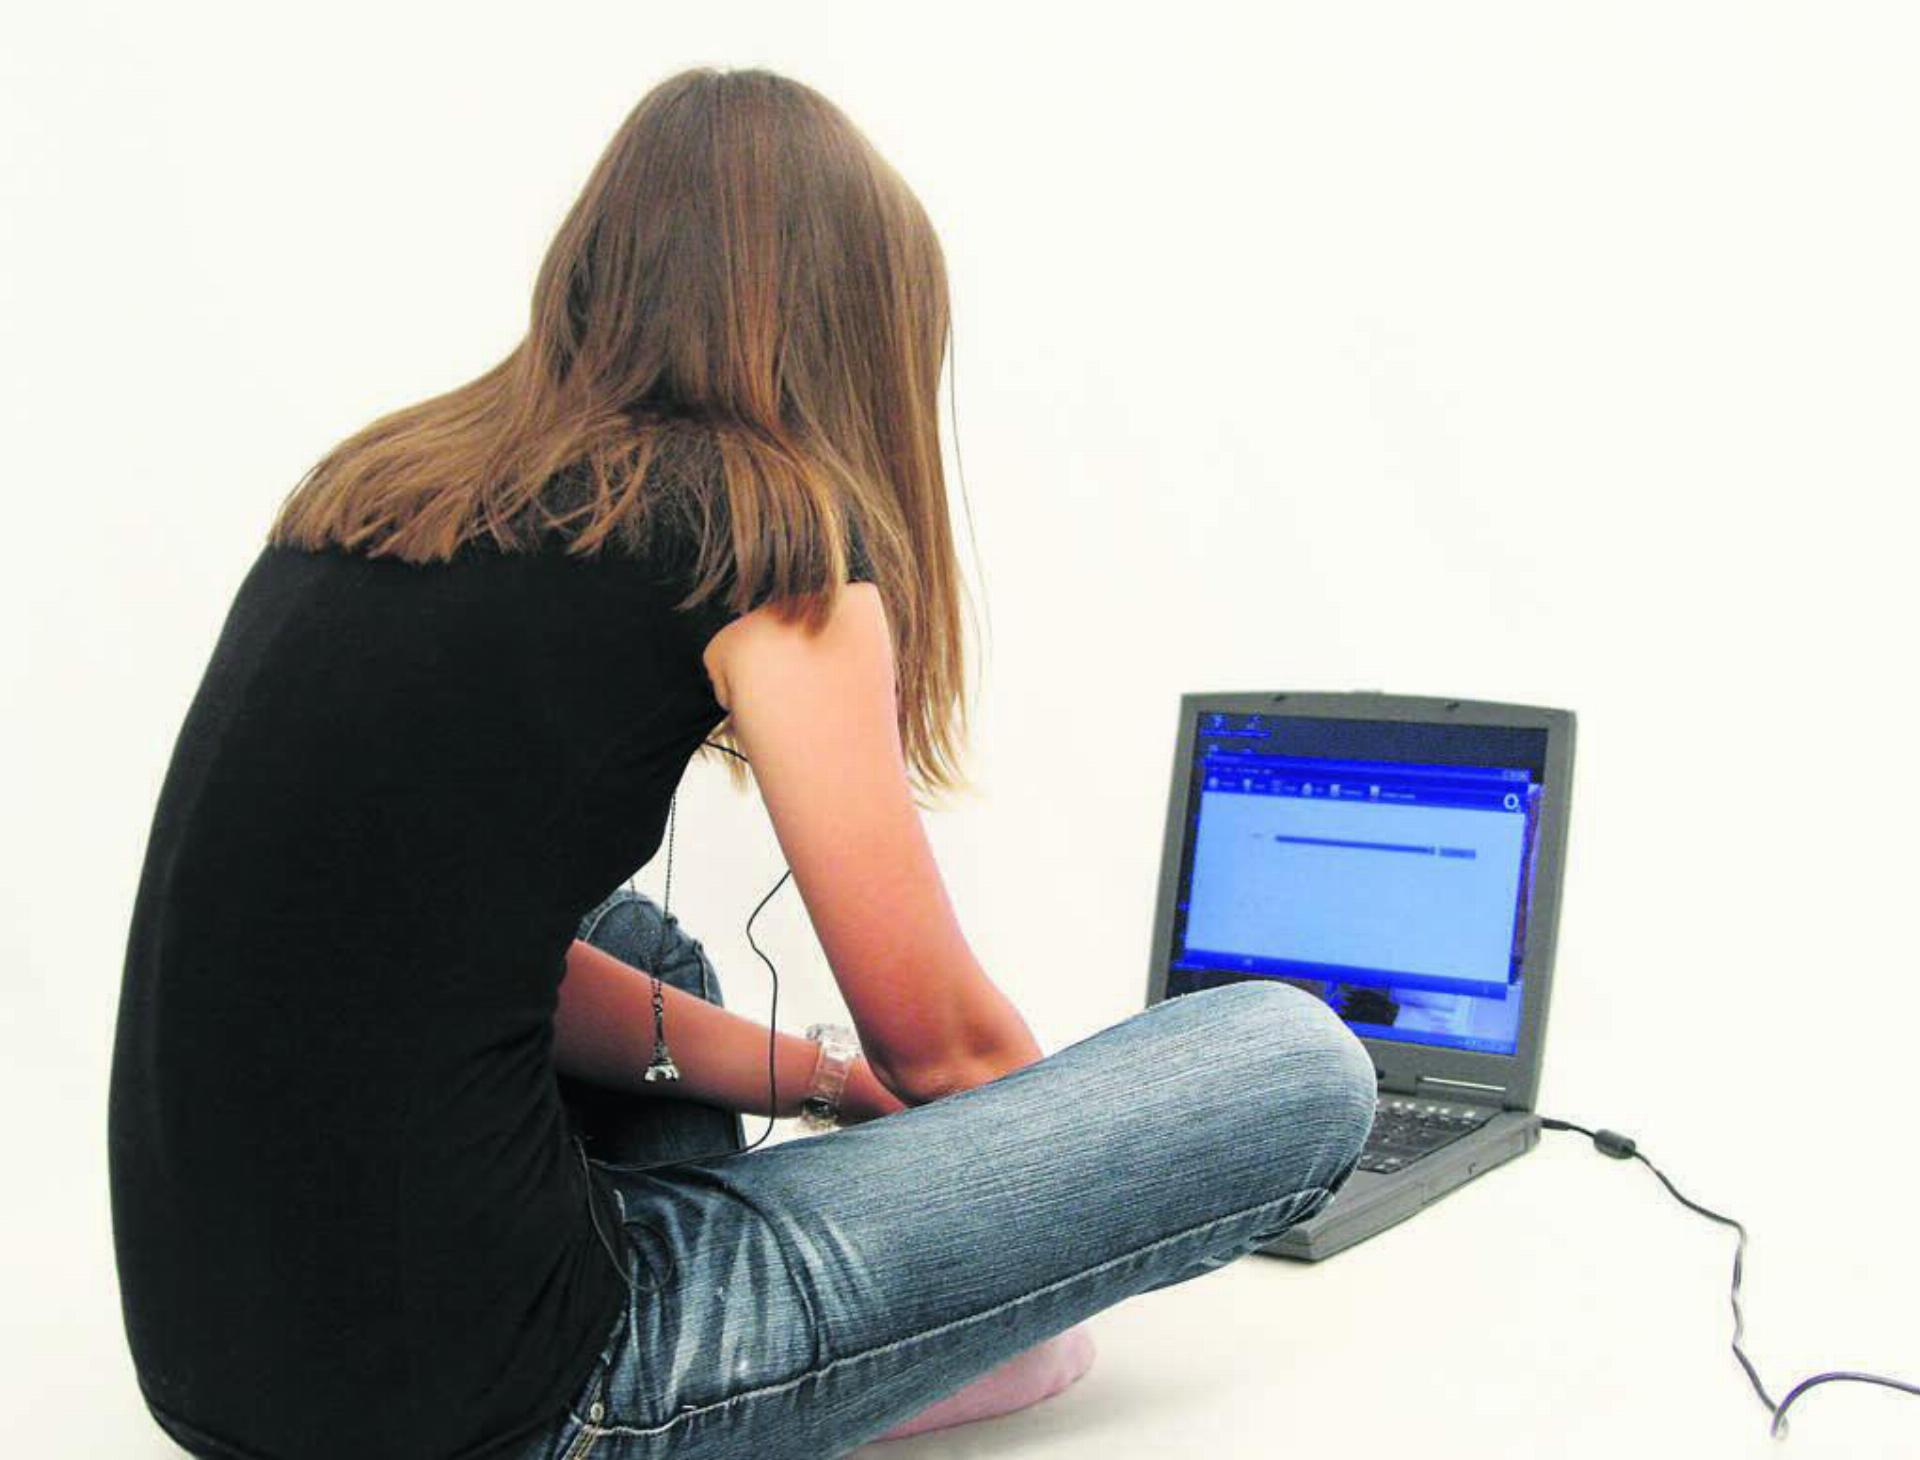 Die Nutzer fühlten sich hinter ihren Computern und durch ihre Pseudonyme geschützt. Bild: Alexandra H. / pixelio.de